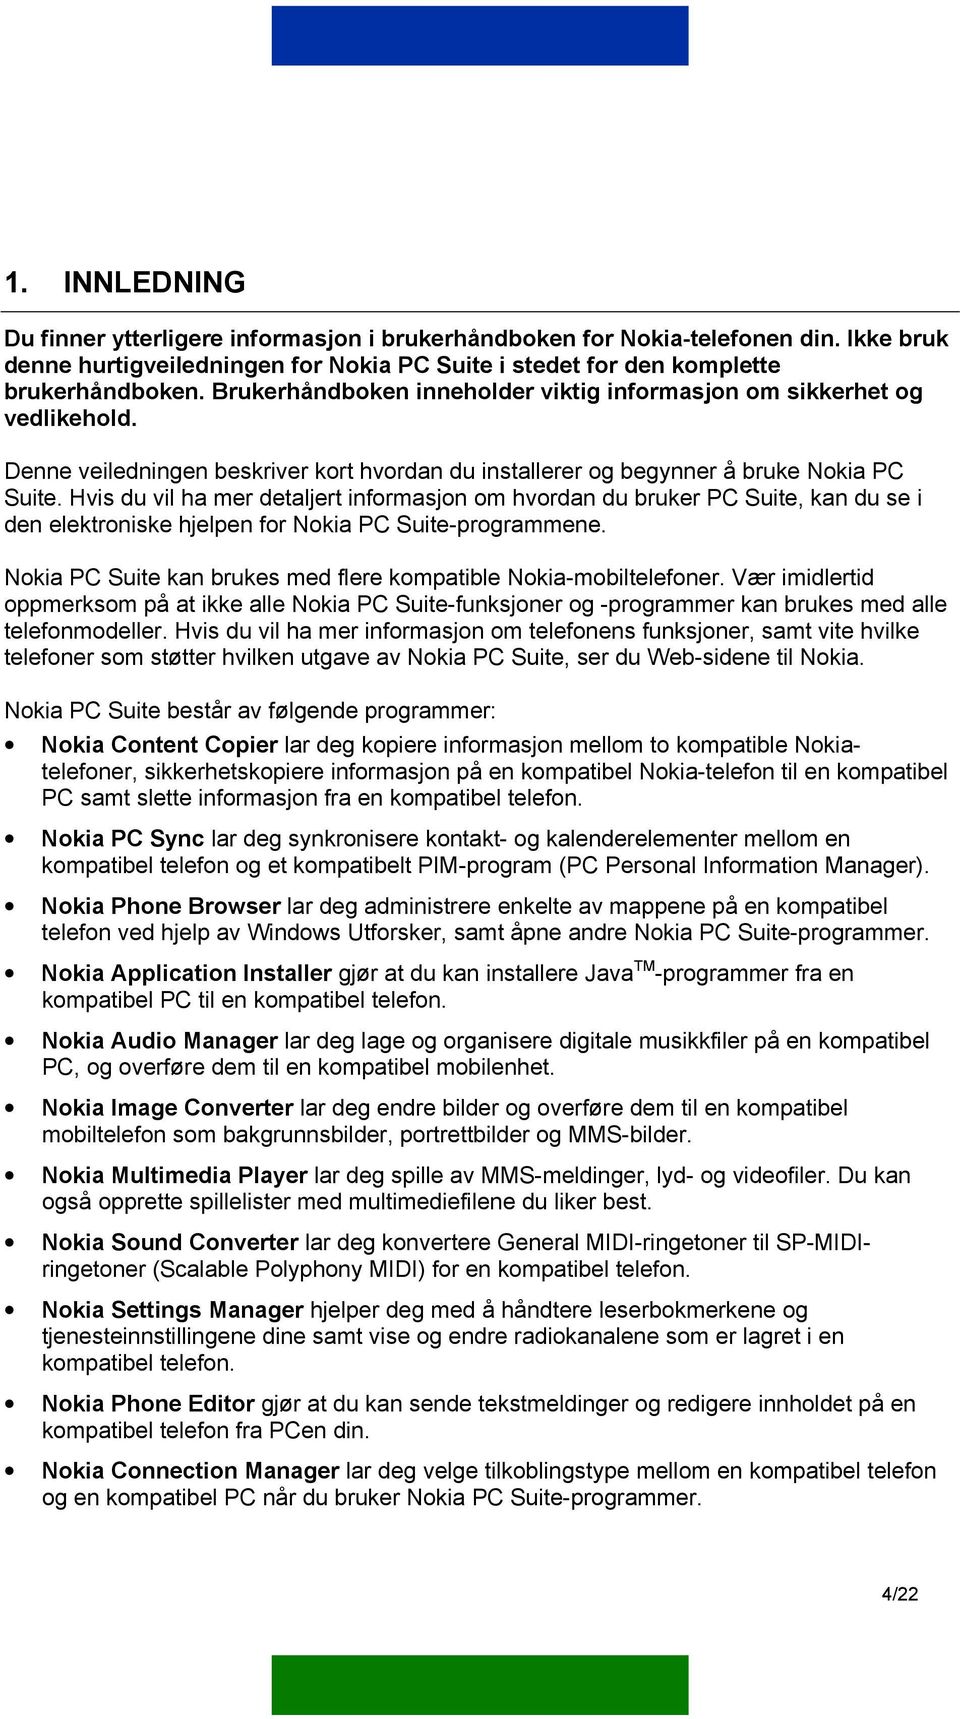 Hvis du vil ha mer detaljert informasjon om hvordan du bruker PC Suite, kan du se i den elektroniske hjelpen for Nokia PC Suite-programmene.